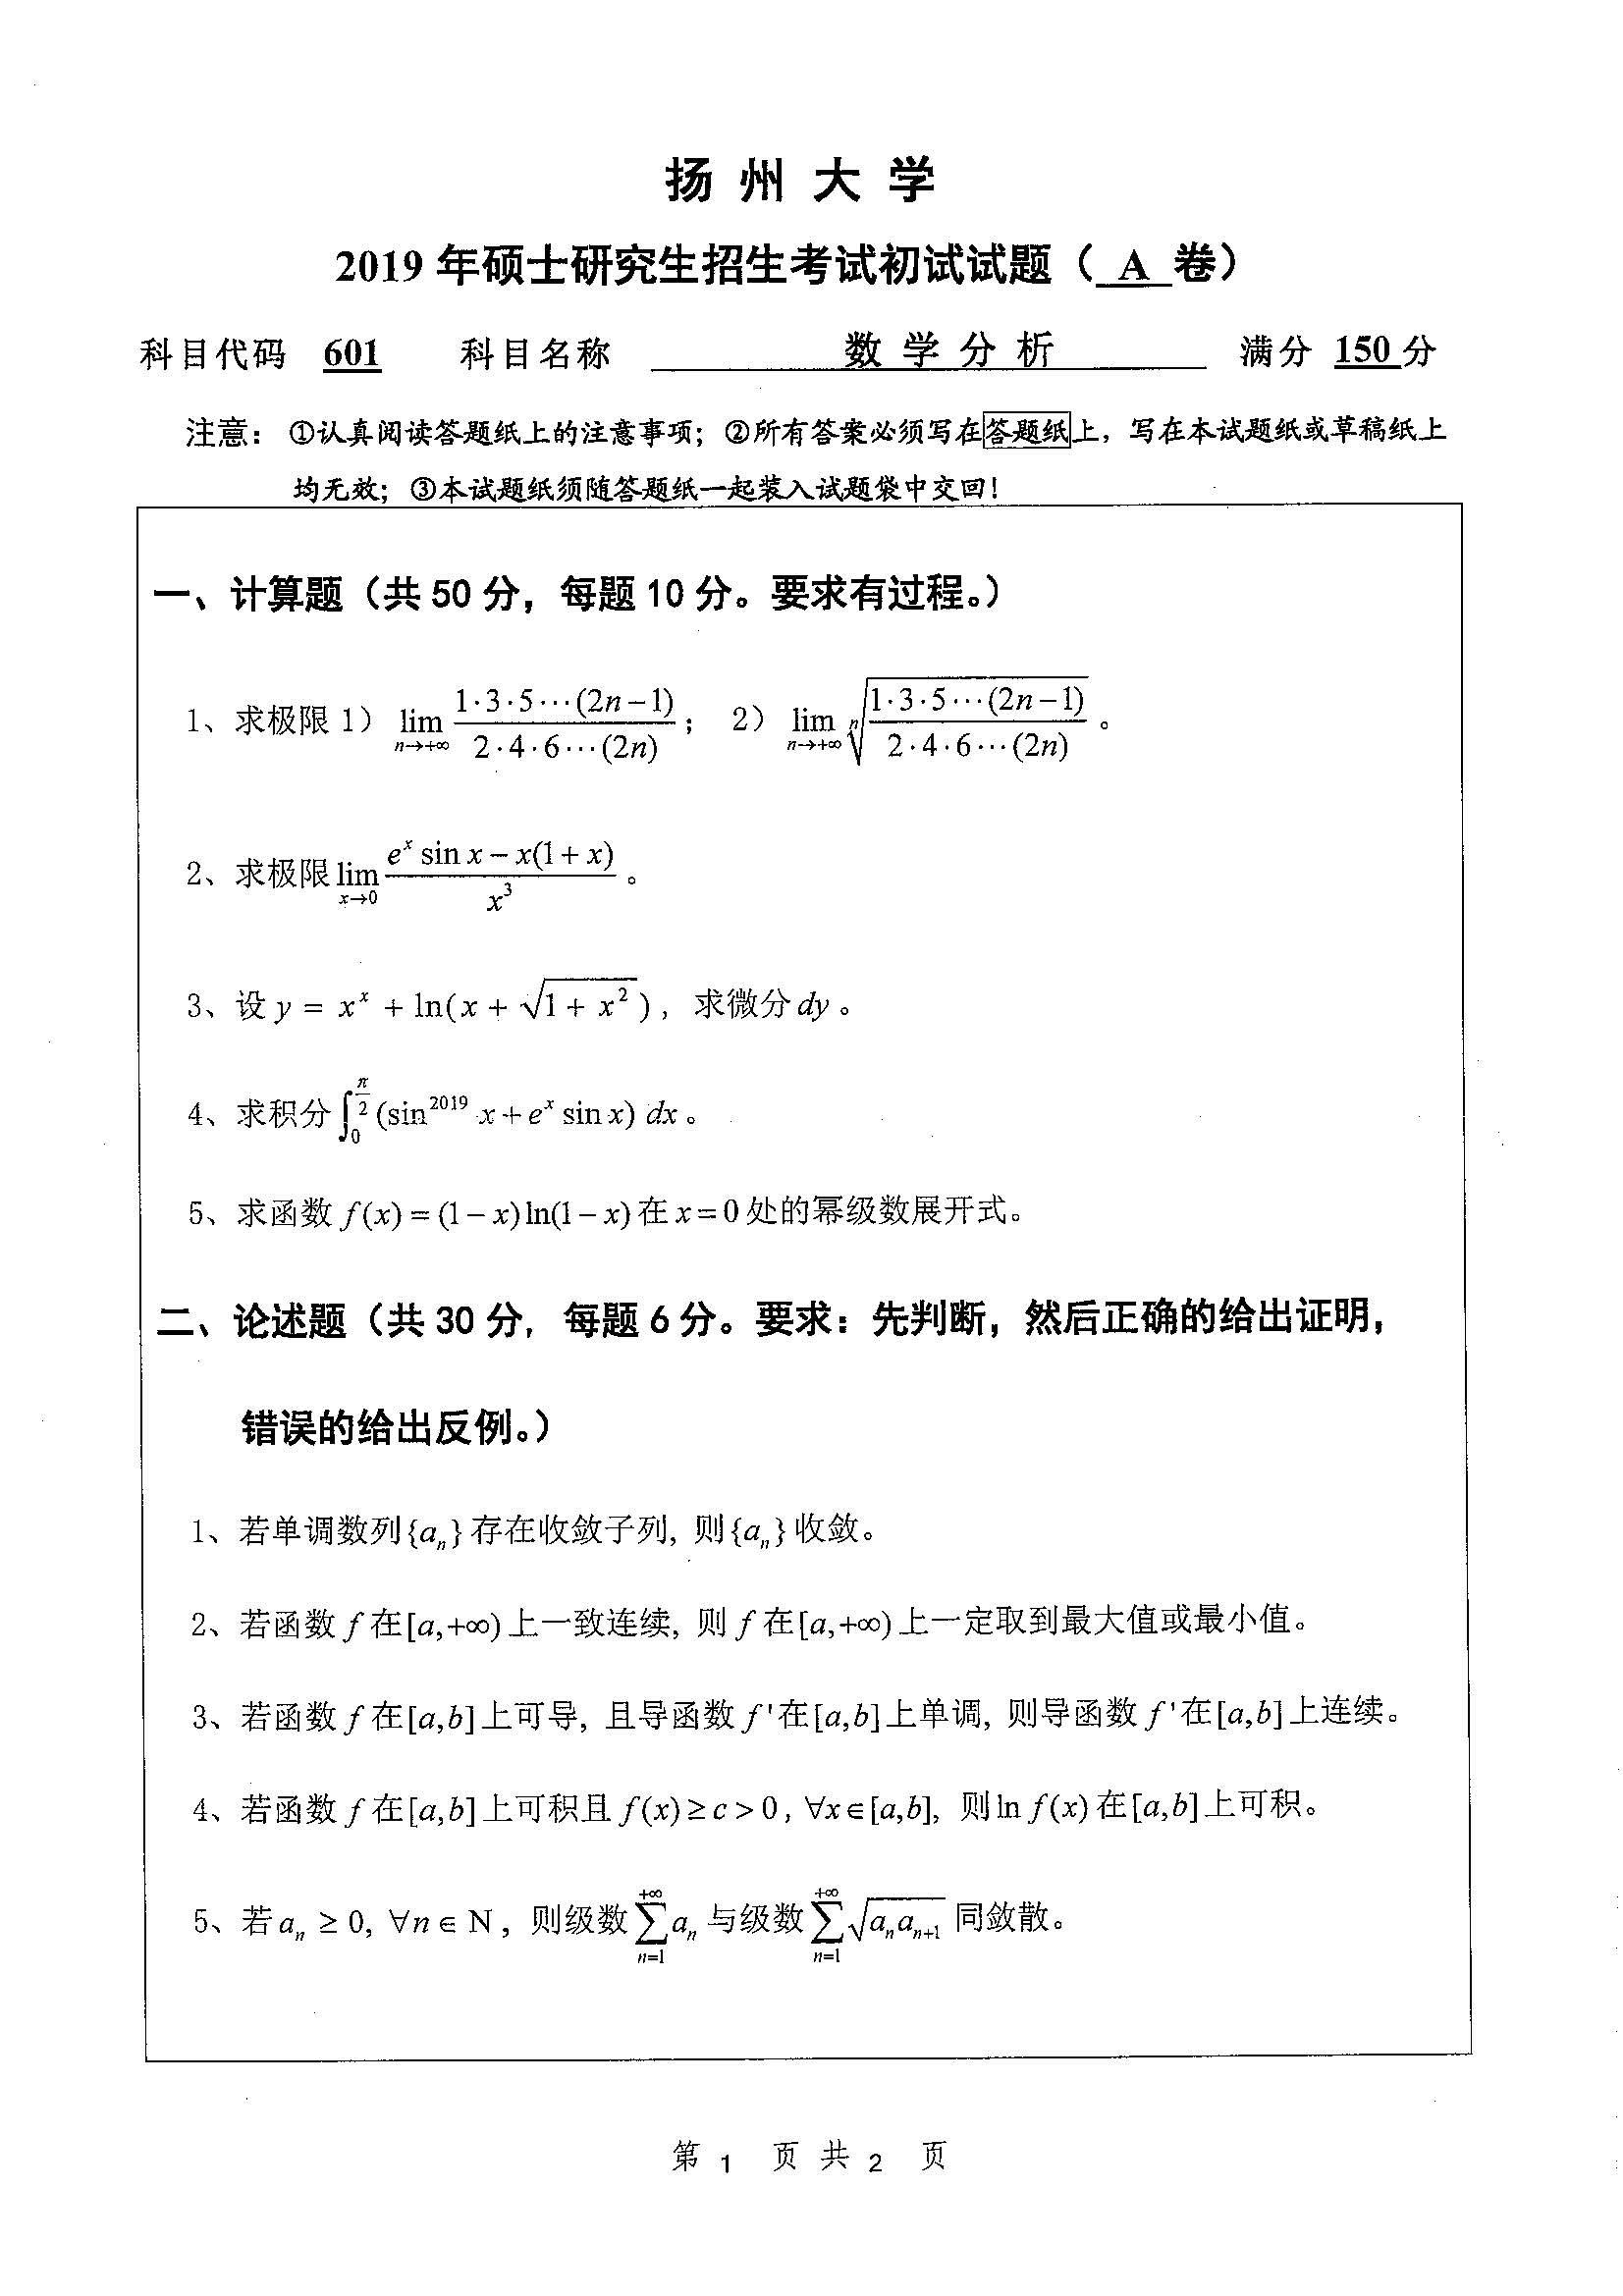 601数学分析2019年考研初试试卷真题扬州大学